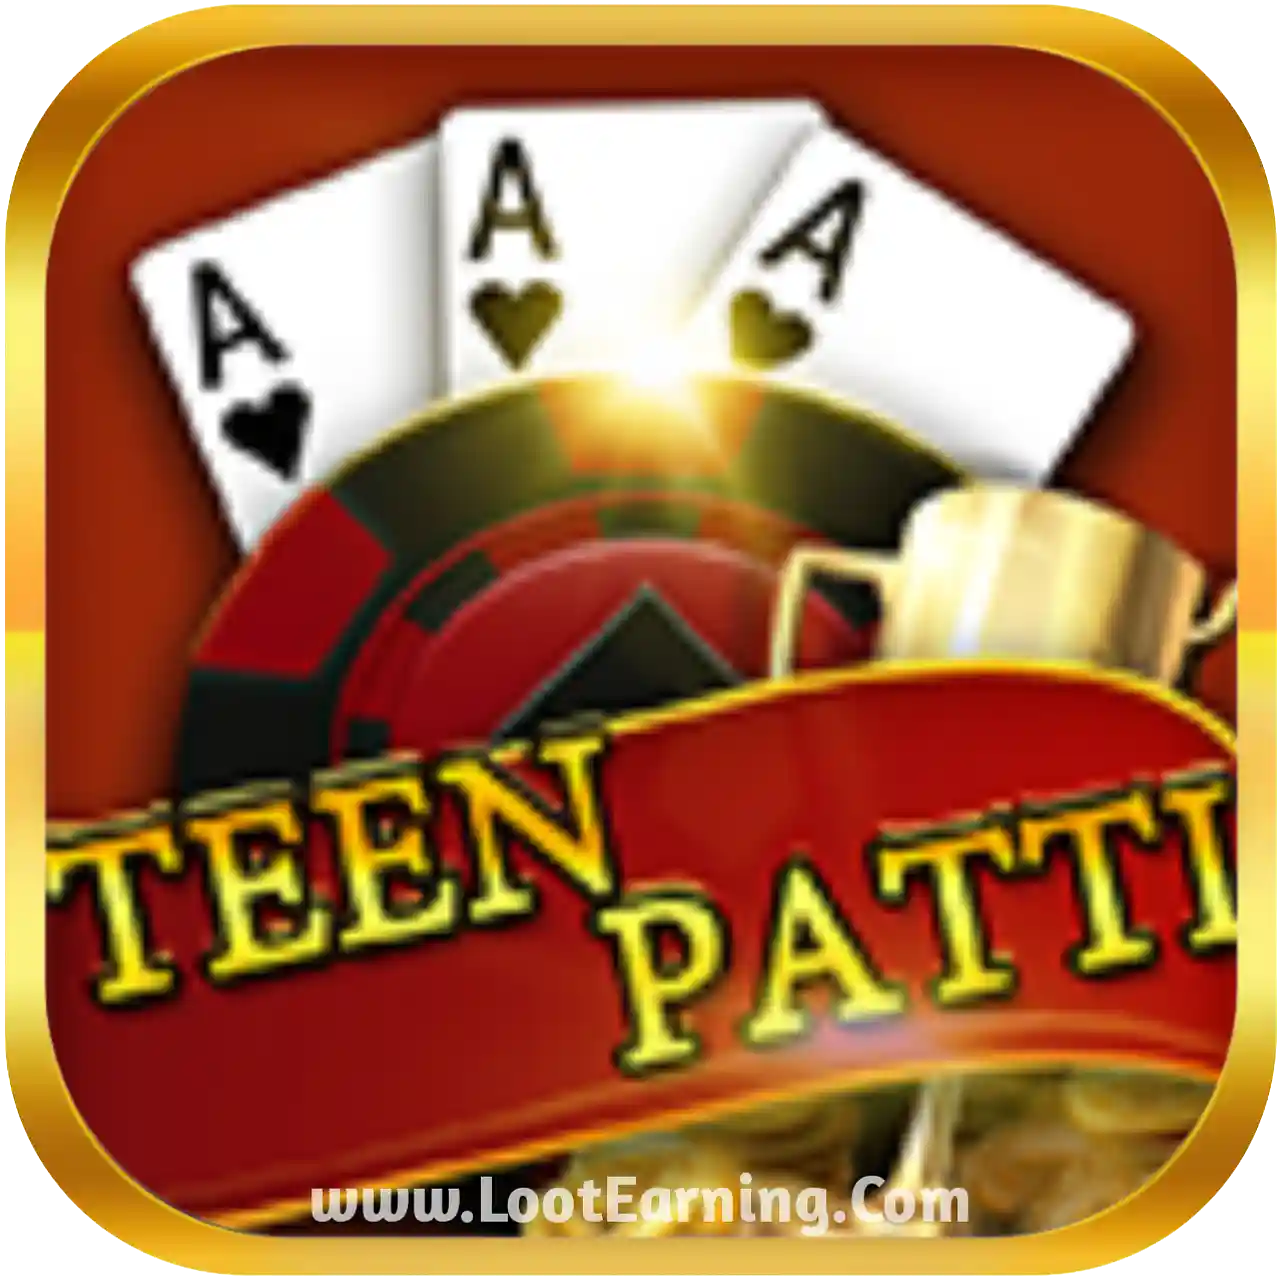 Meta Teen Patti - All Best Rummy App